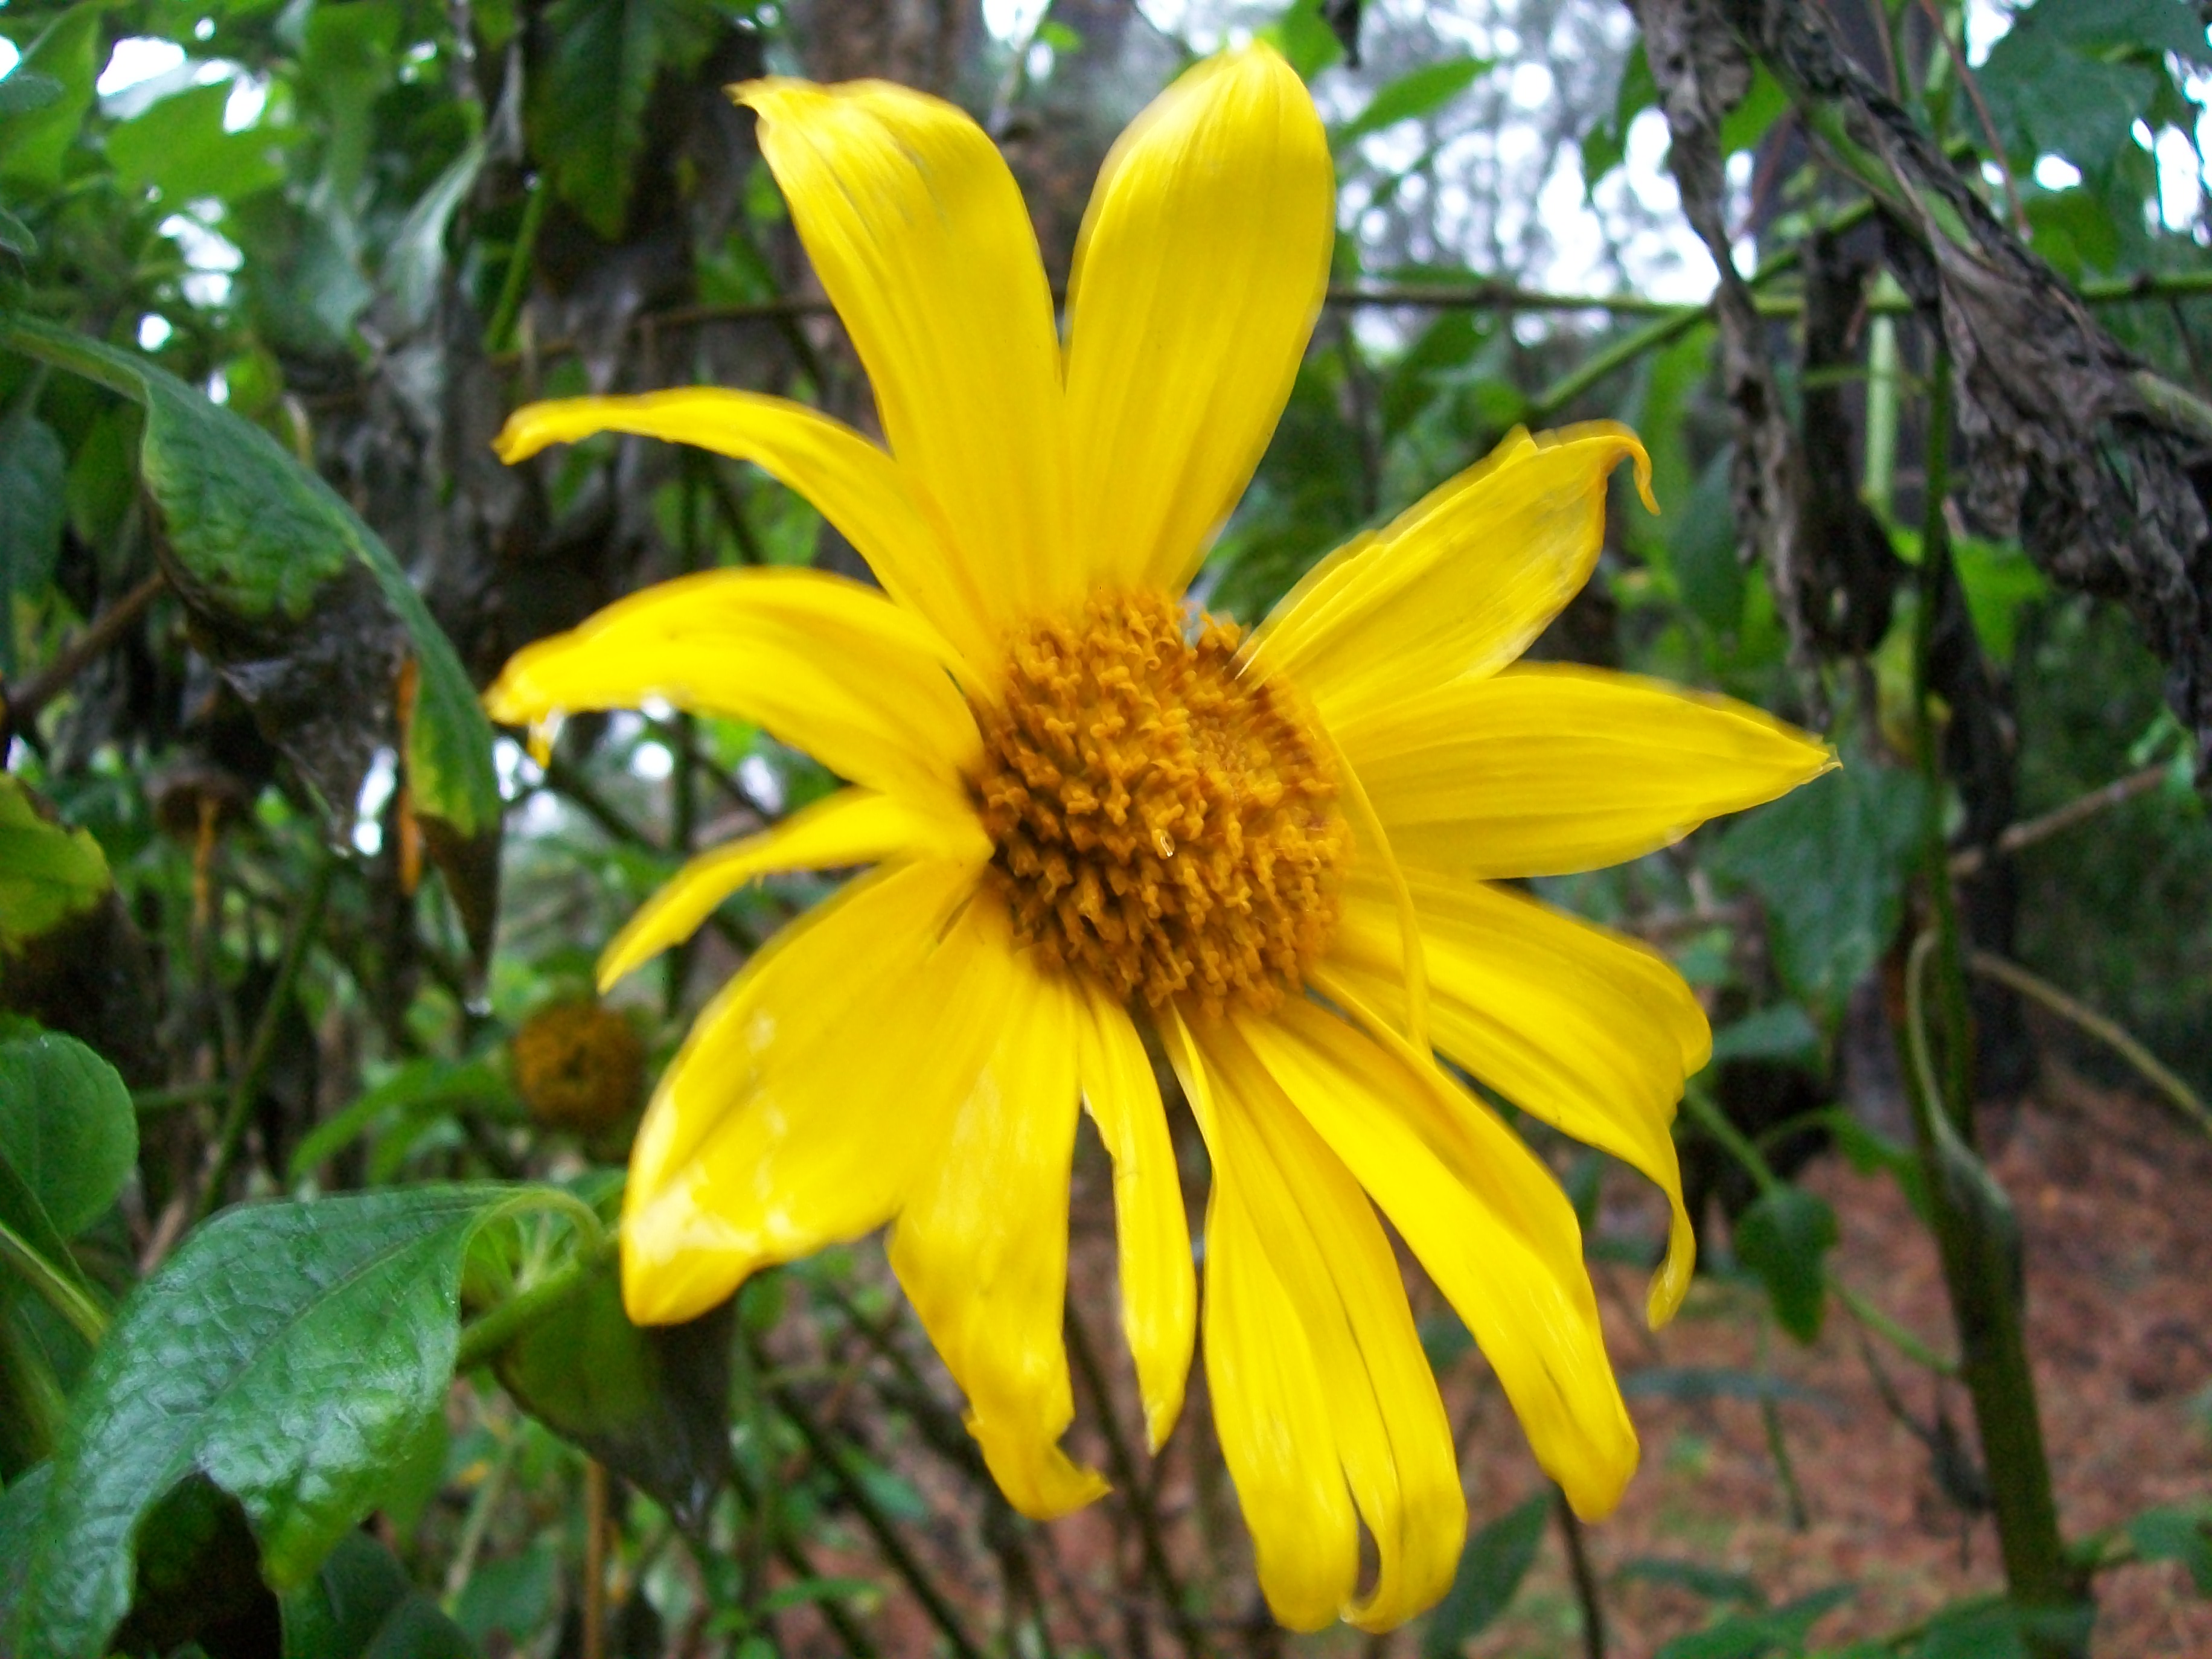 Tithonia diversiflolia / Mexican Sunflower